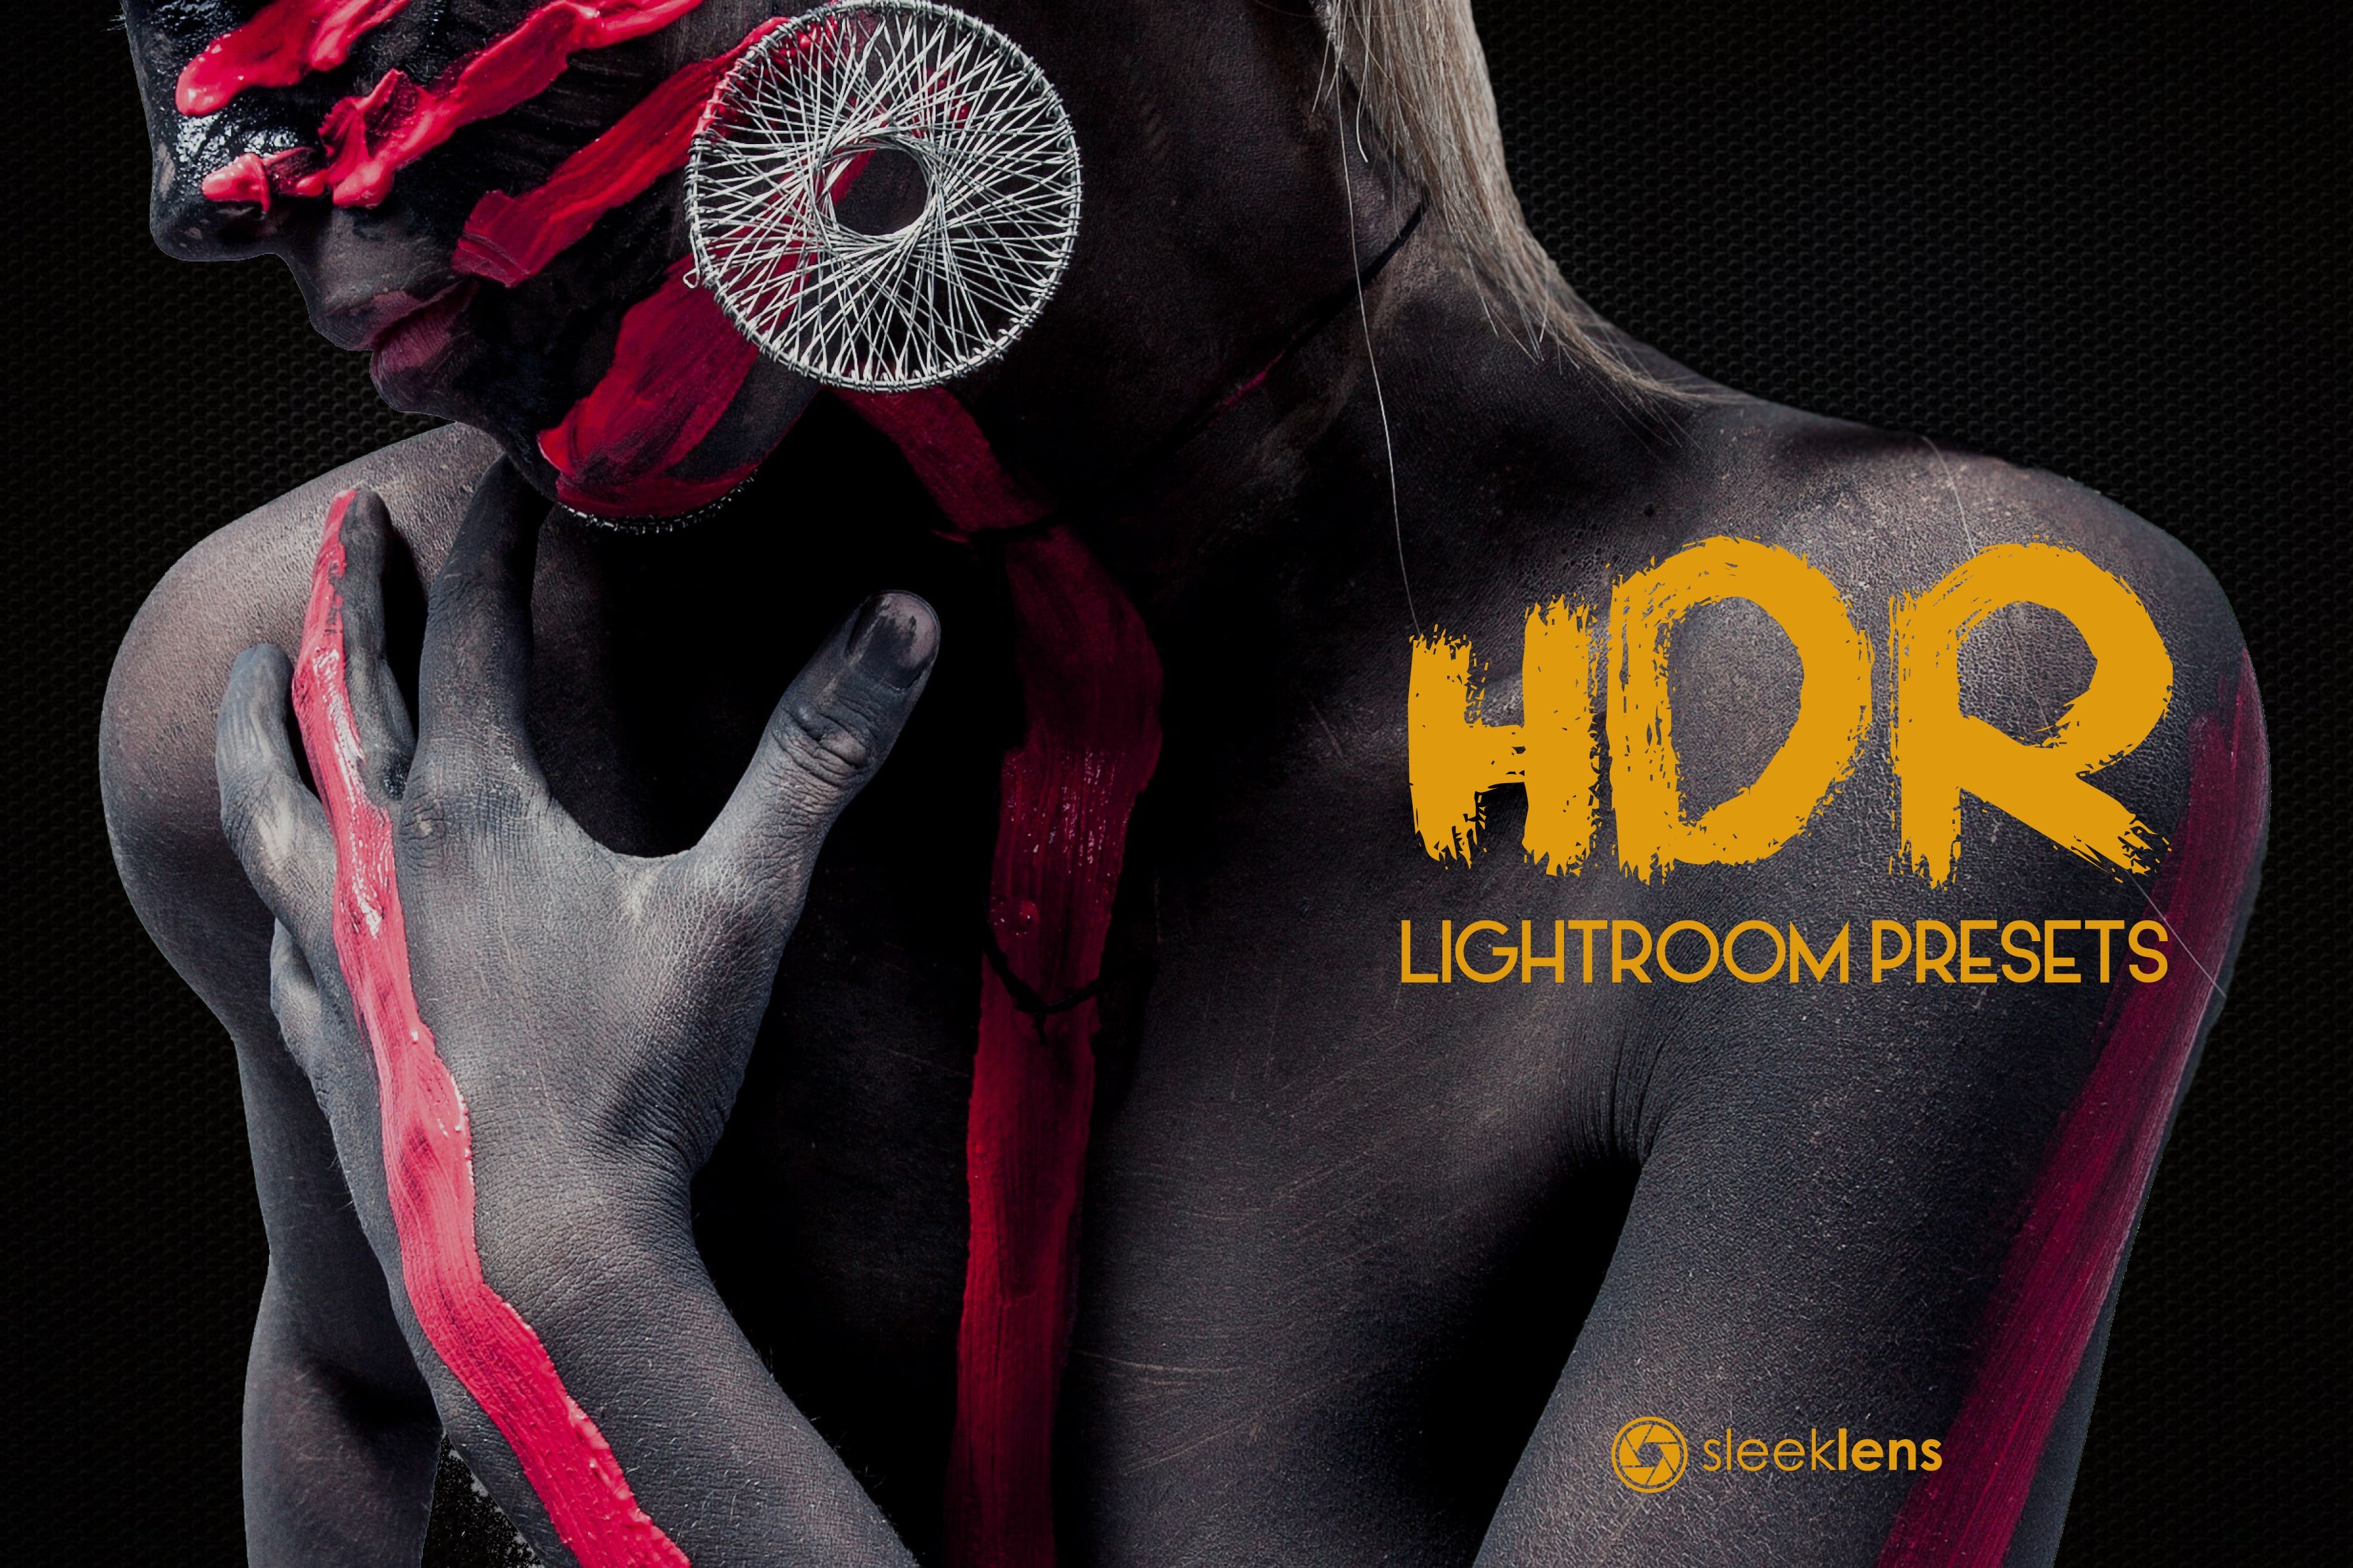 HDR Visions Lightroom Presets Bundlecover image.